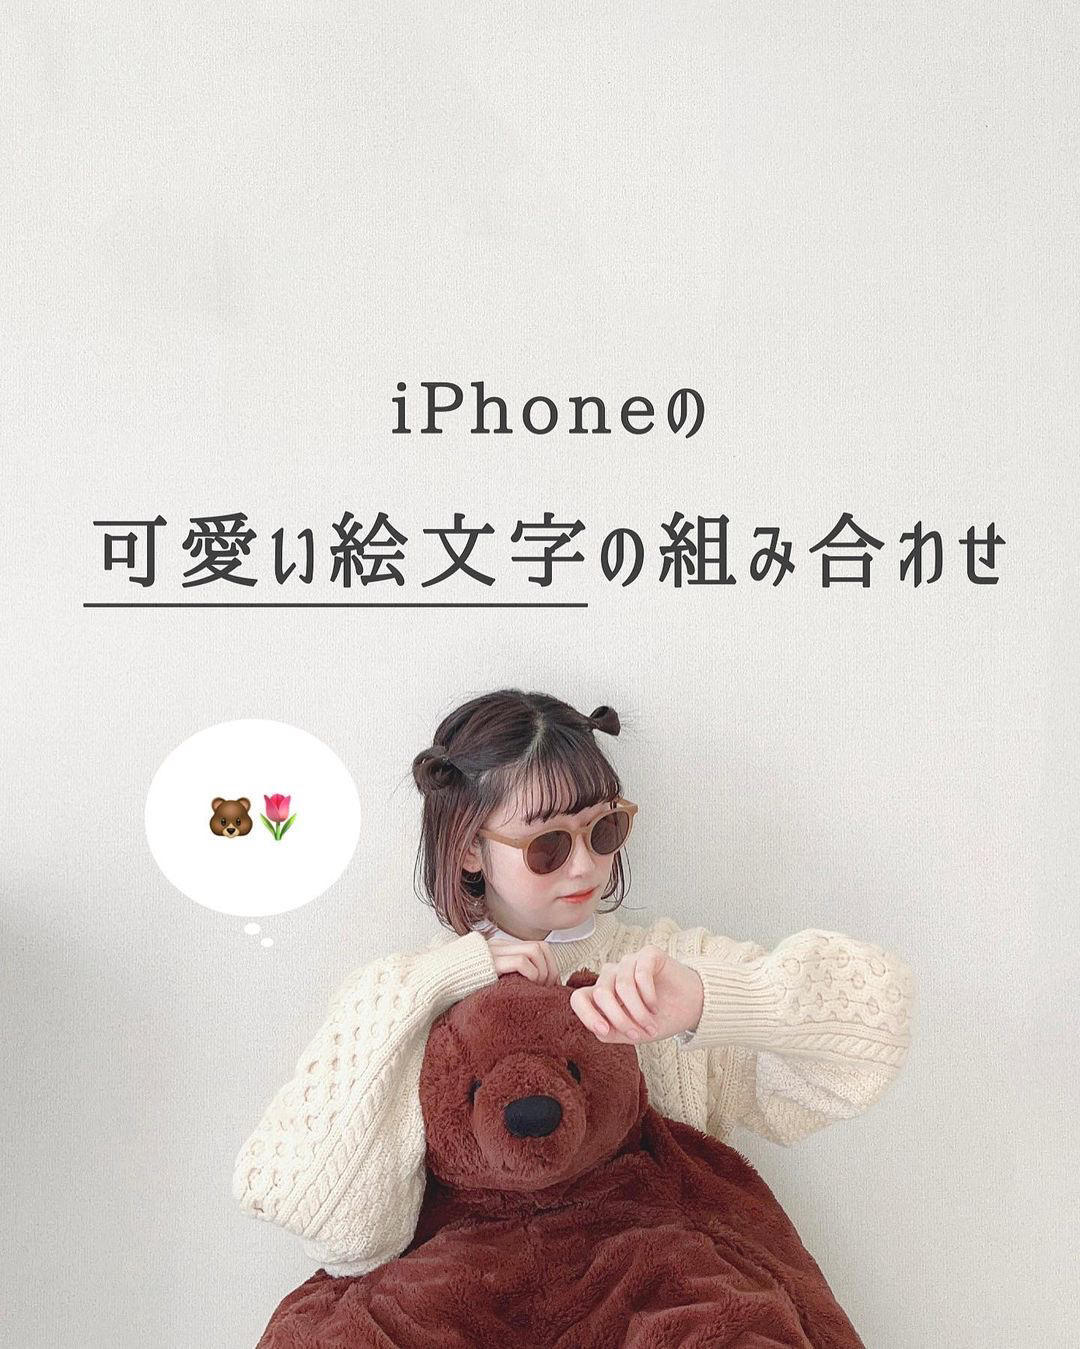 Iphoneの可愛い絵文字の組み合わせ Nemnが投稿したフォトブック Lemon8